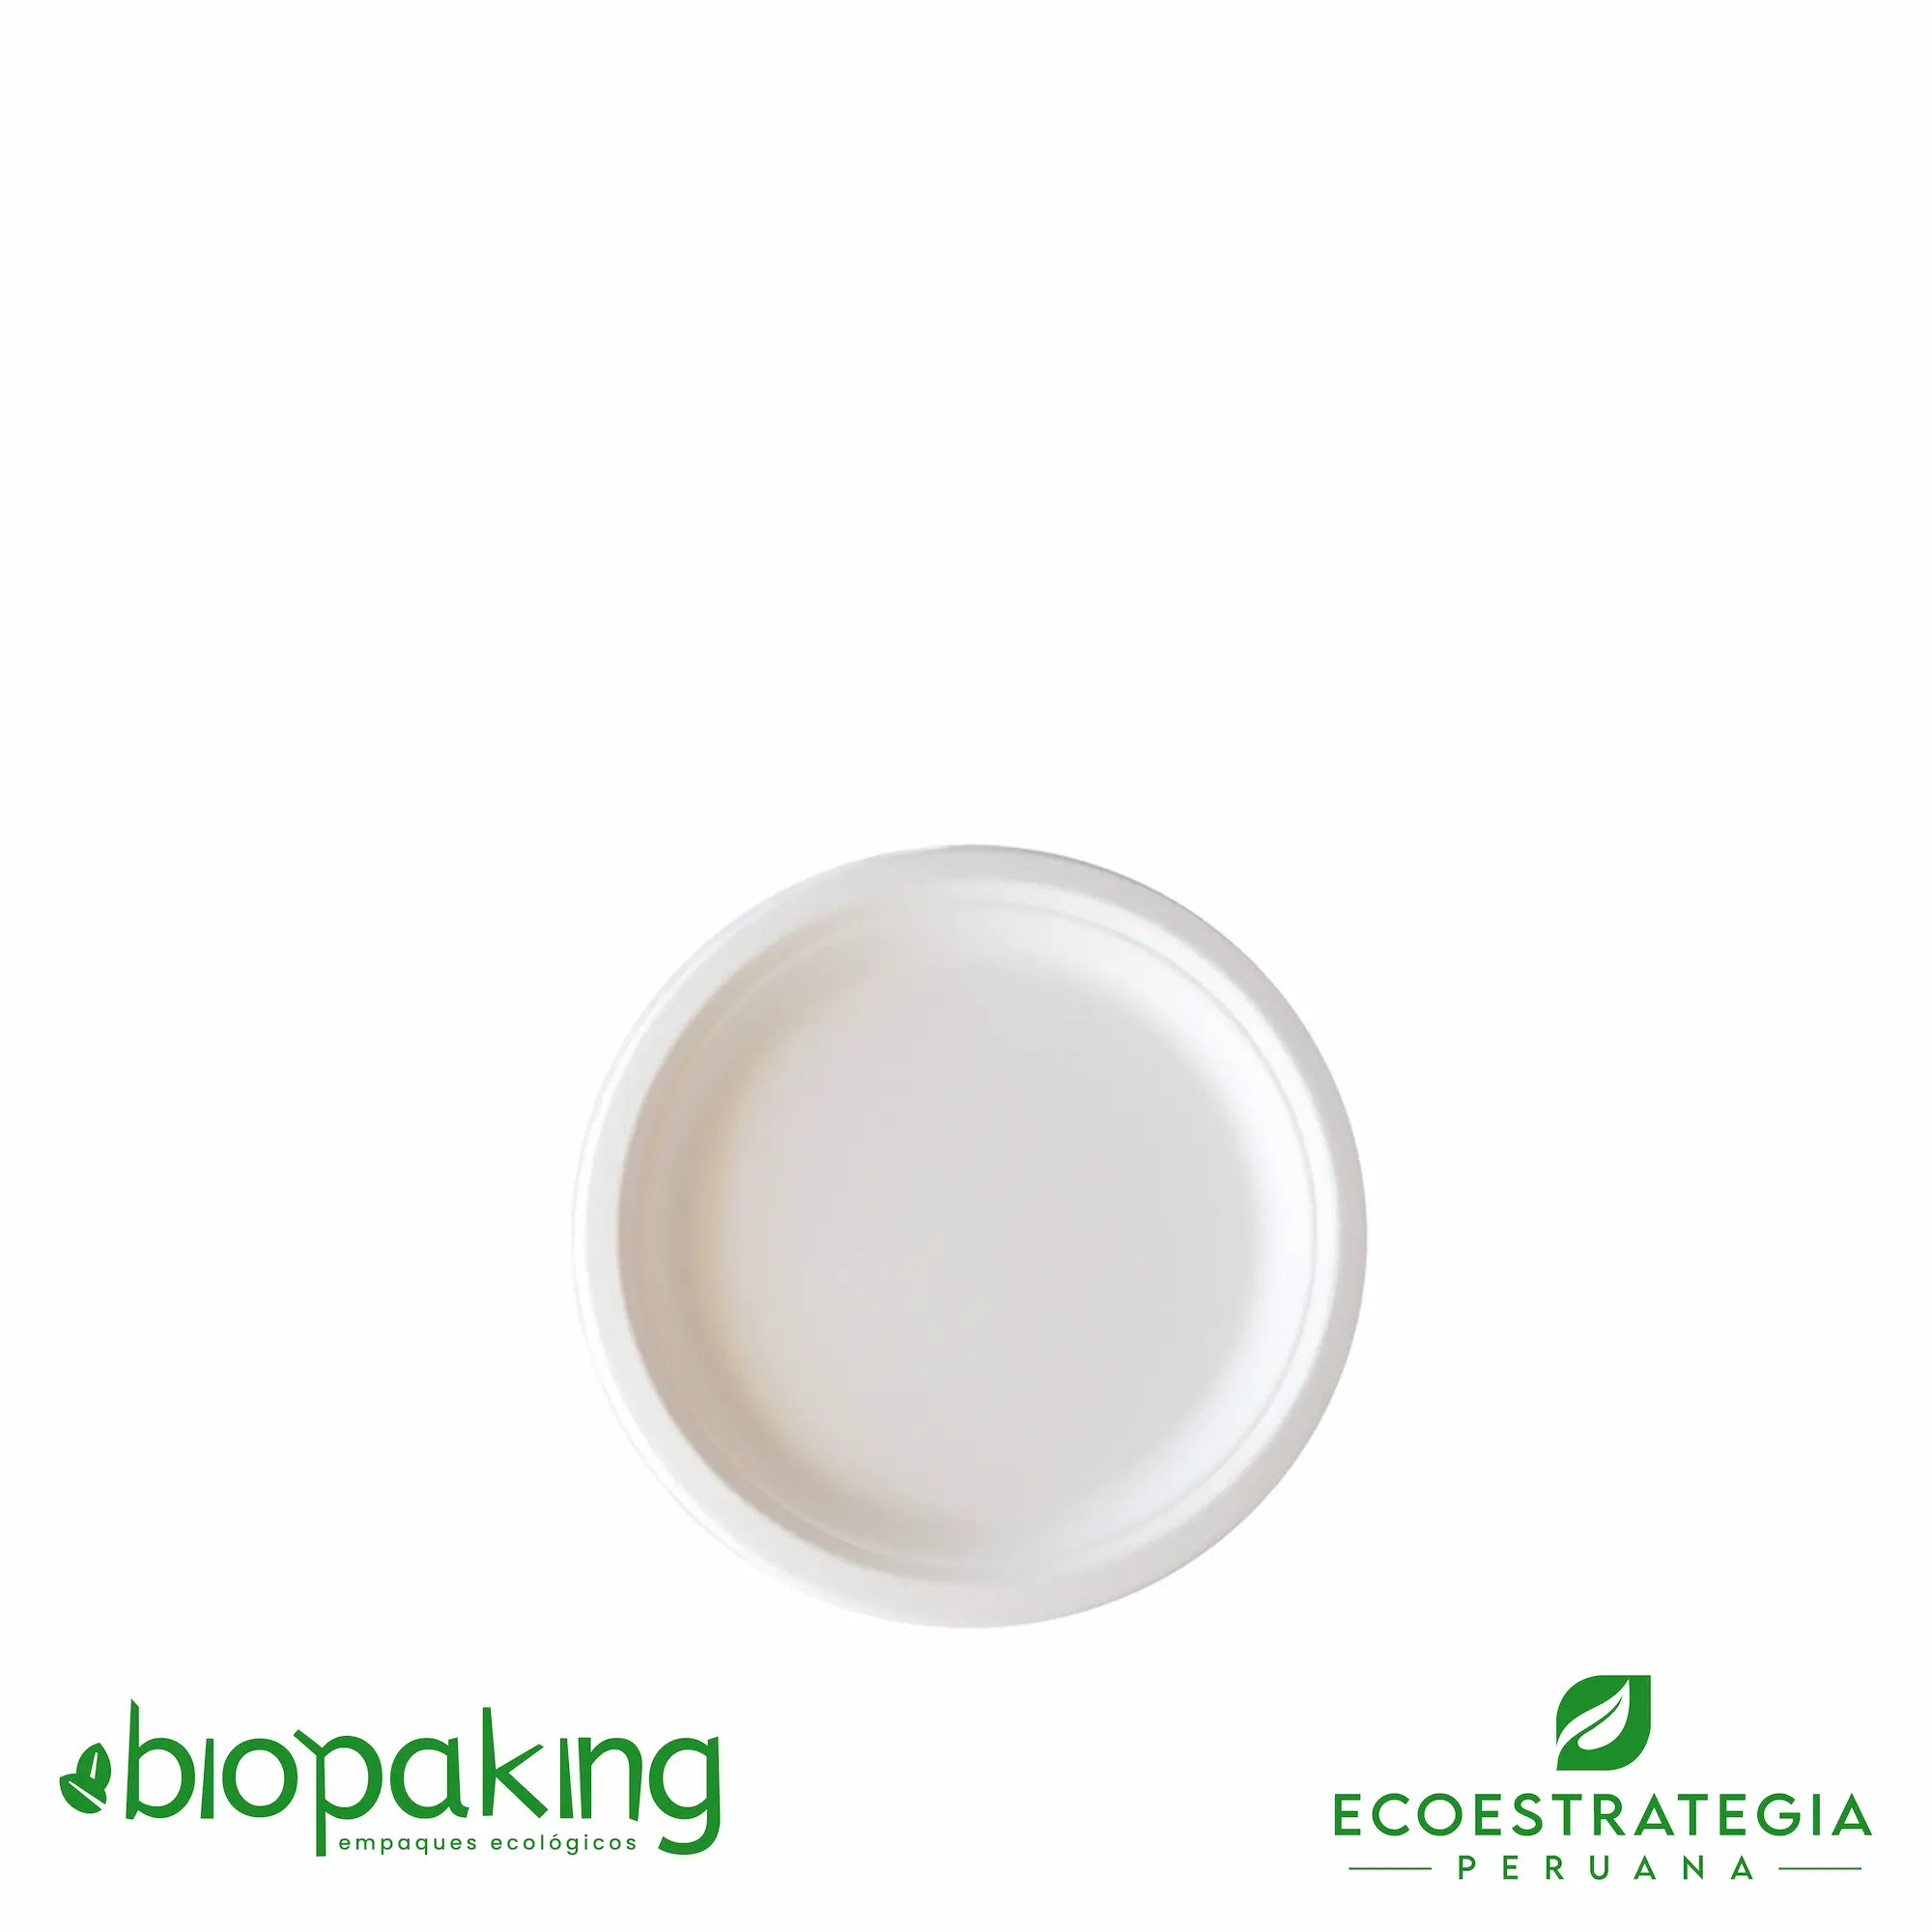 Este plato de 15cm está hecho a base del bagazo de caña de azúcar. Producto de materiales biodegradables. Cotiza tus tapers y envases ecológicos y descartables.